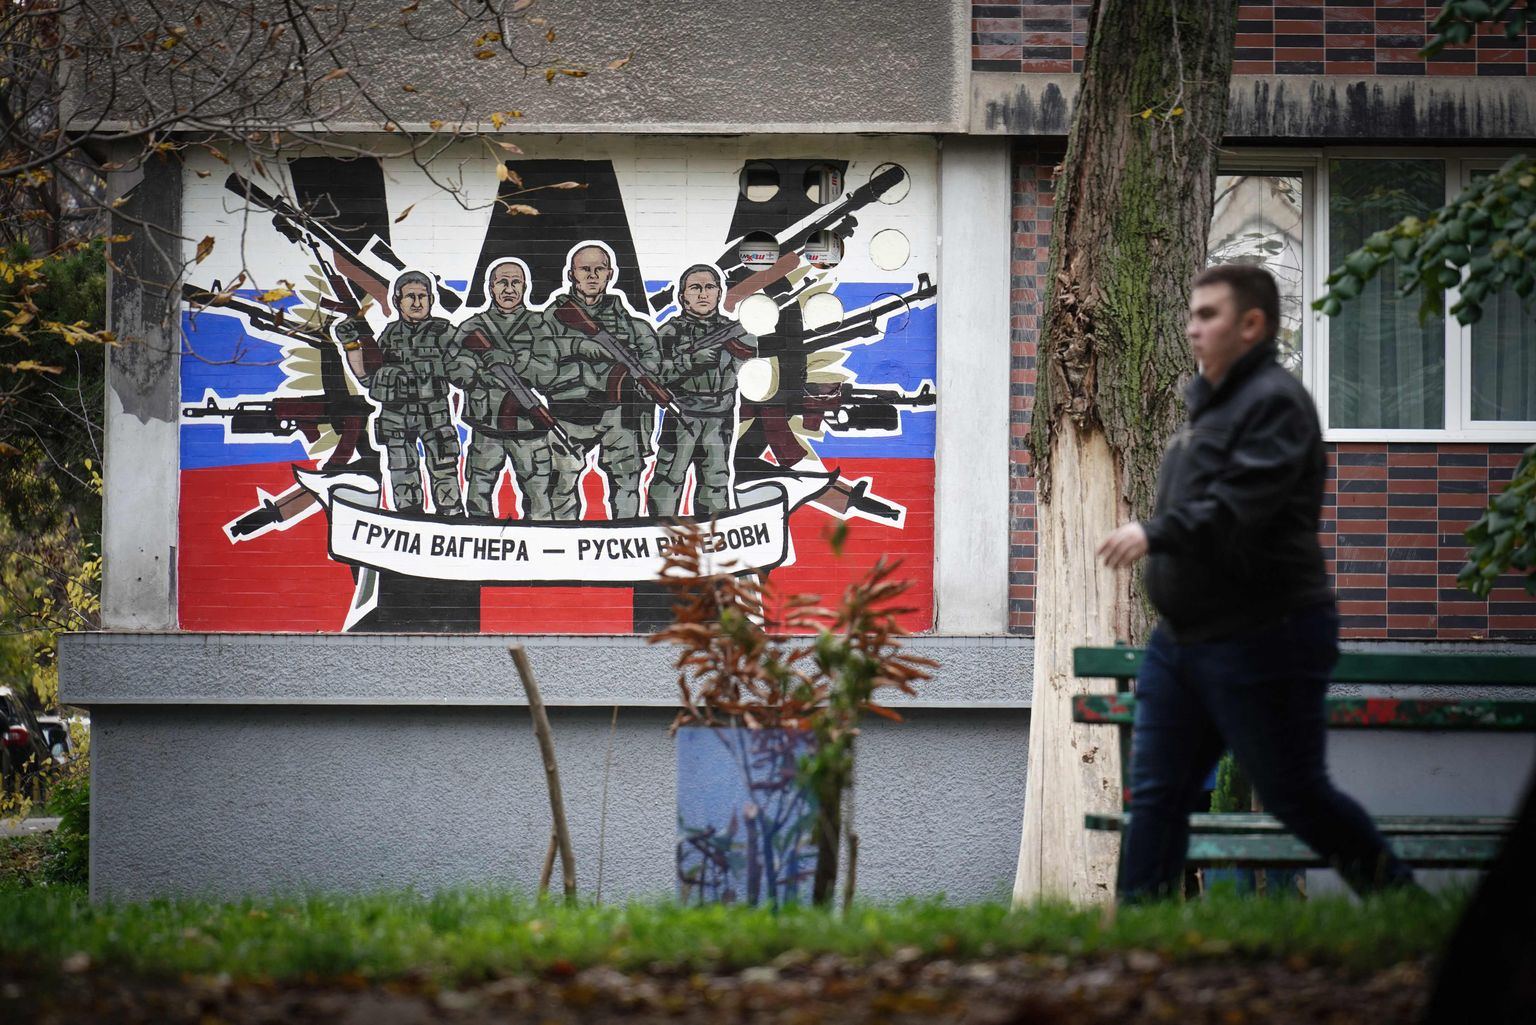 Venemaa erasõjafirmat Wagner ülistav seinamaaling Belgradis. Kiri sellel ütleb: "Wagneri grupp - Vene rüütlid".